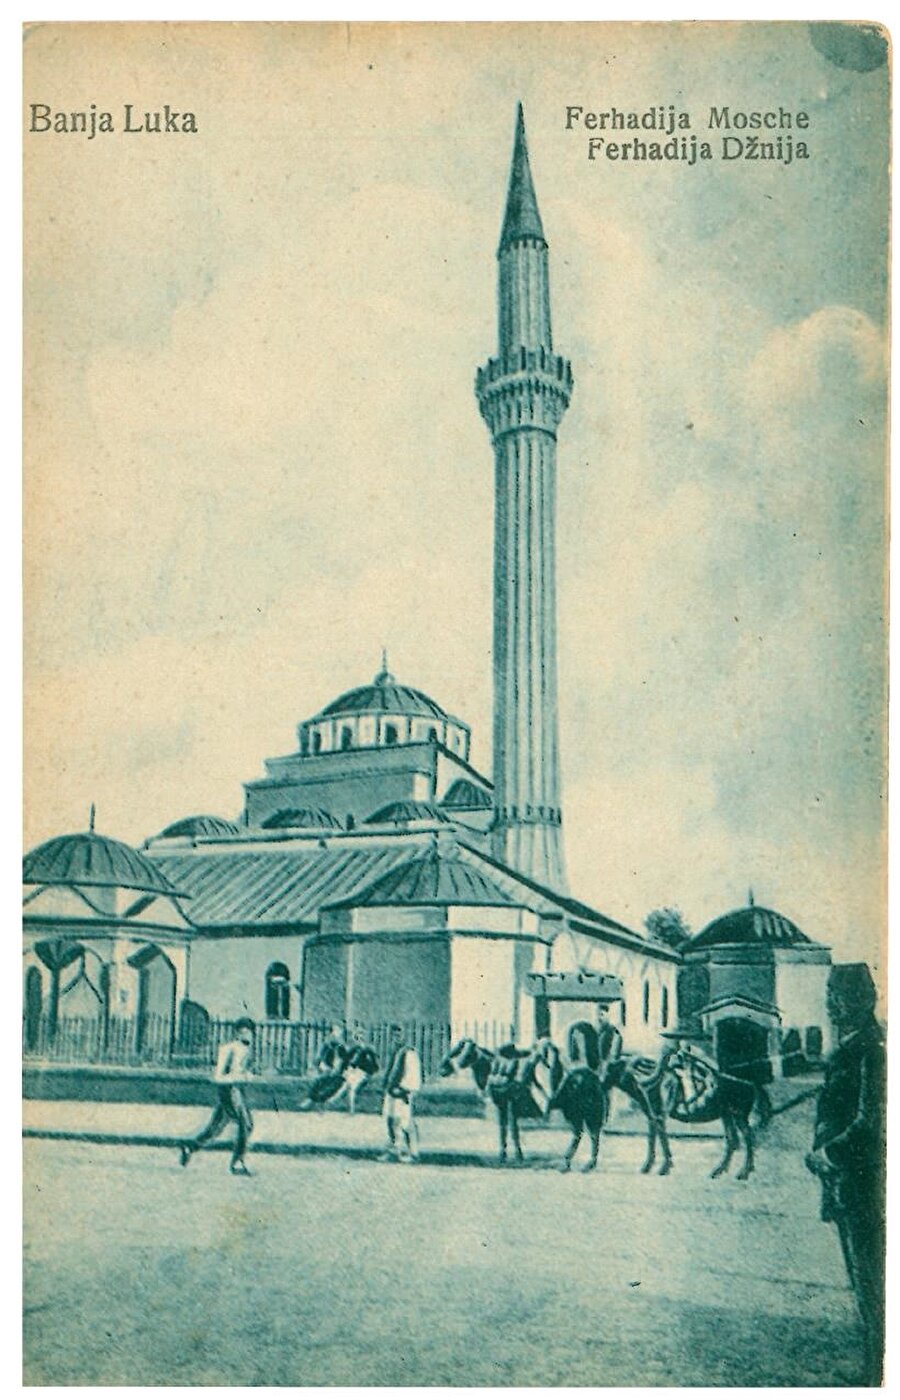 . Şehrin en önemli sembollerinden biri olan Ferhad Paşa Camii de bu nehrin kenarında bulunuyor.